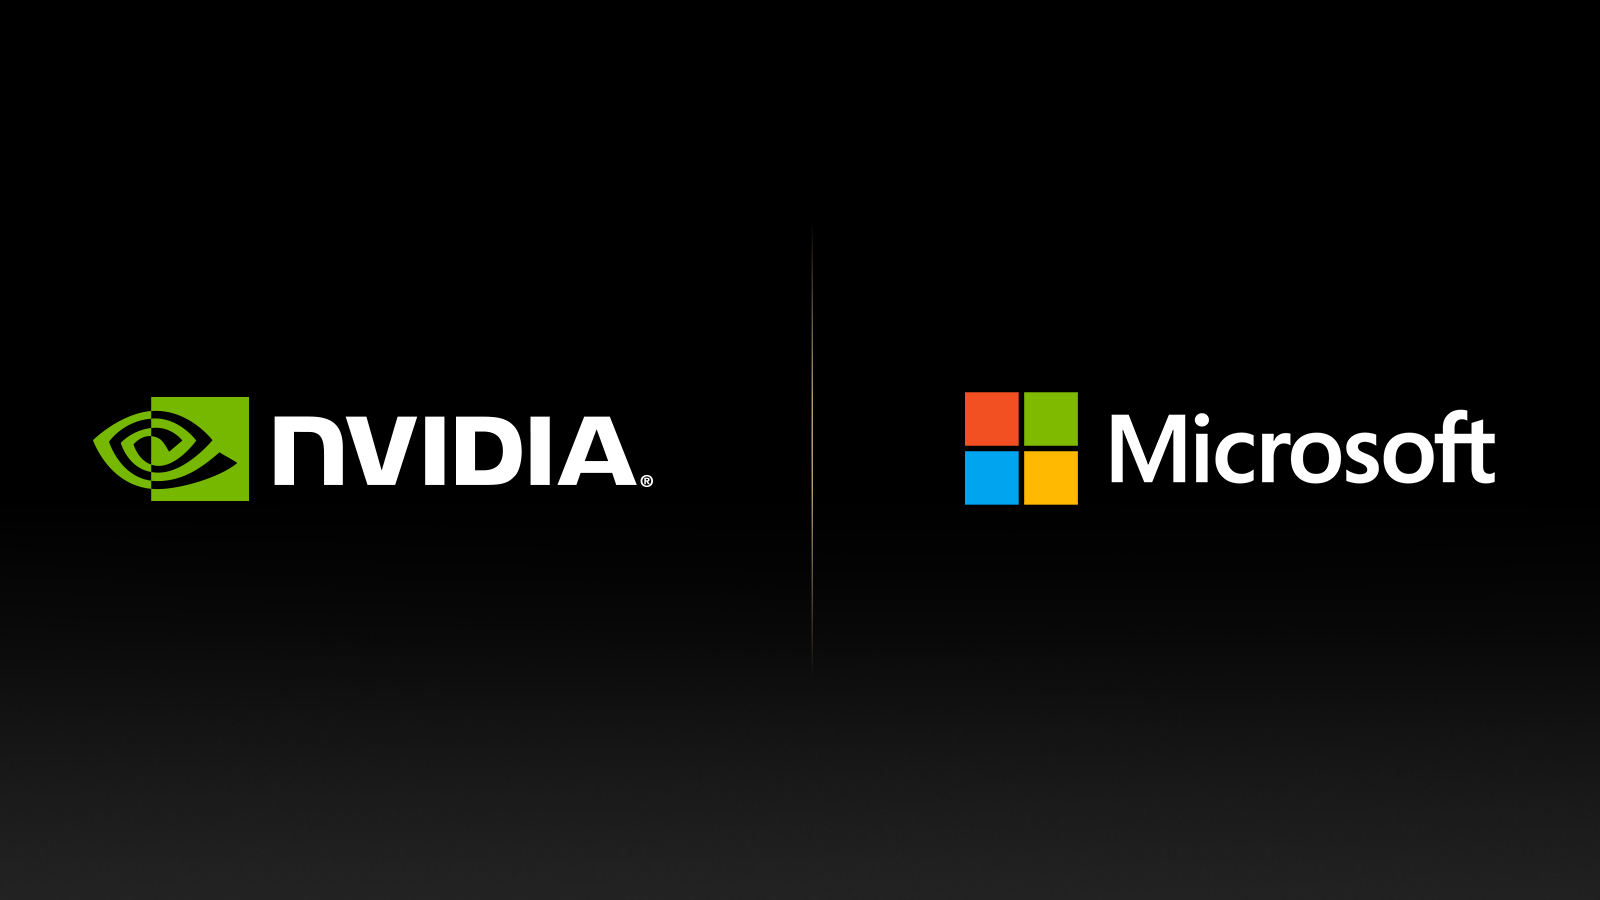 Microsoft NVIDIA.jpg